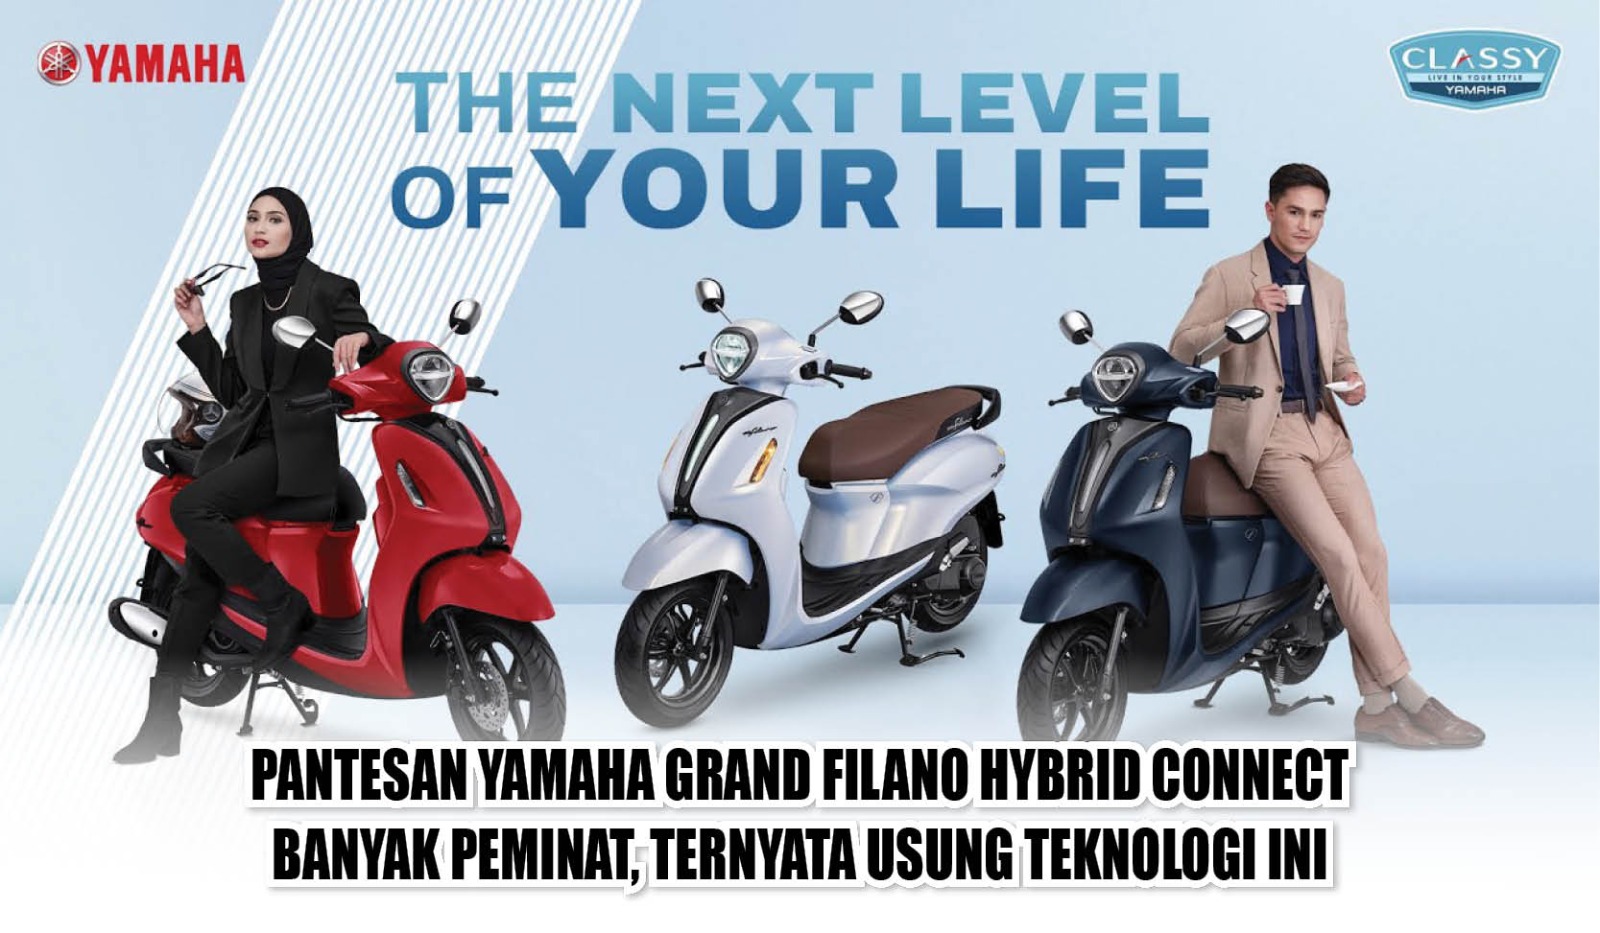 Pantesan Yamaha Grand Filano Hybrid Connect Banyak Peminat, Ternyata Usung Teknologi Ini